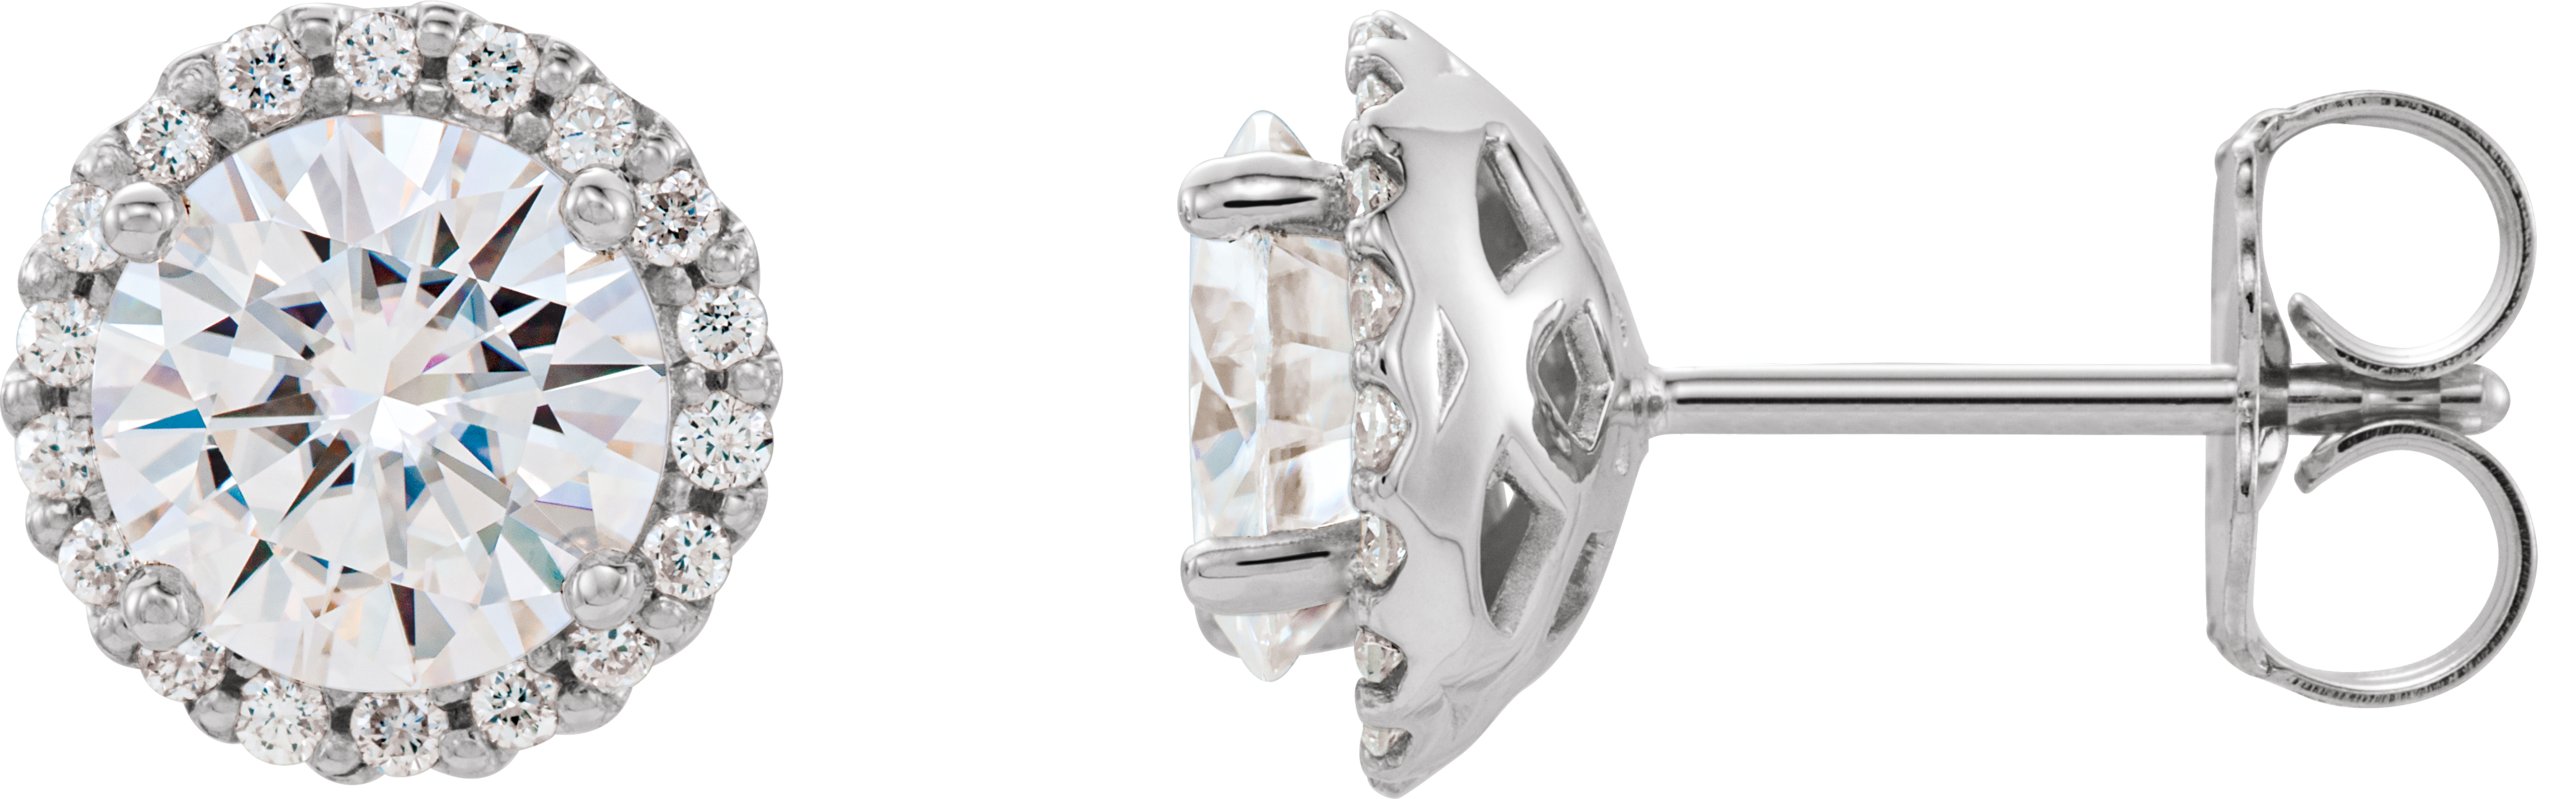 14K White 6 mm Round Forever One Moissanite and .125 CTW Diamond Earrings Ref. 12816032